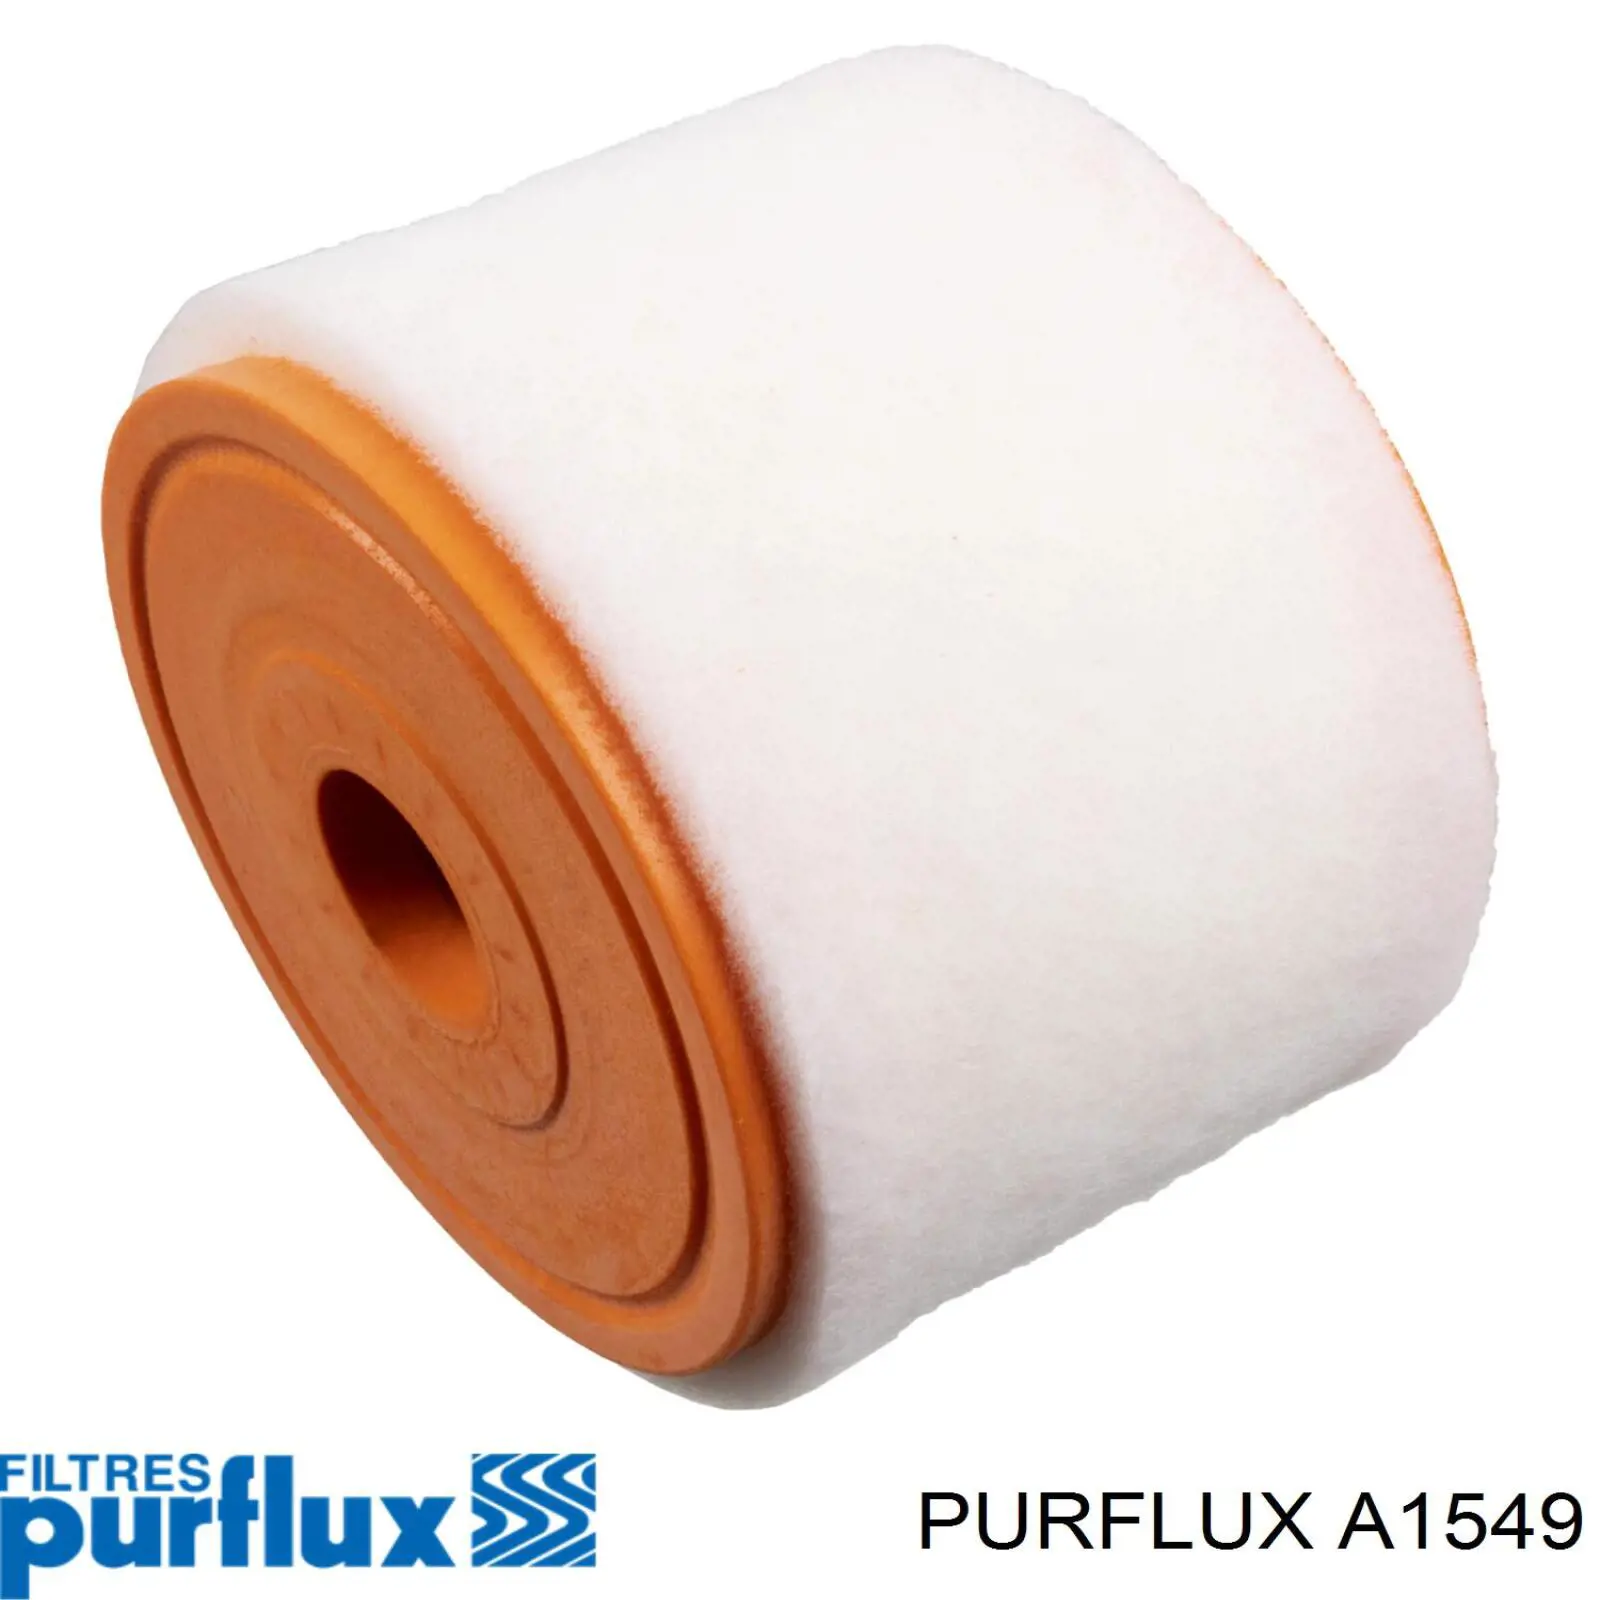 A1549 Purflux filtro de aire